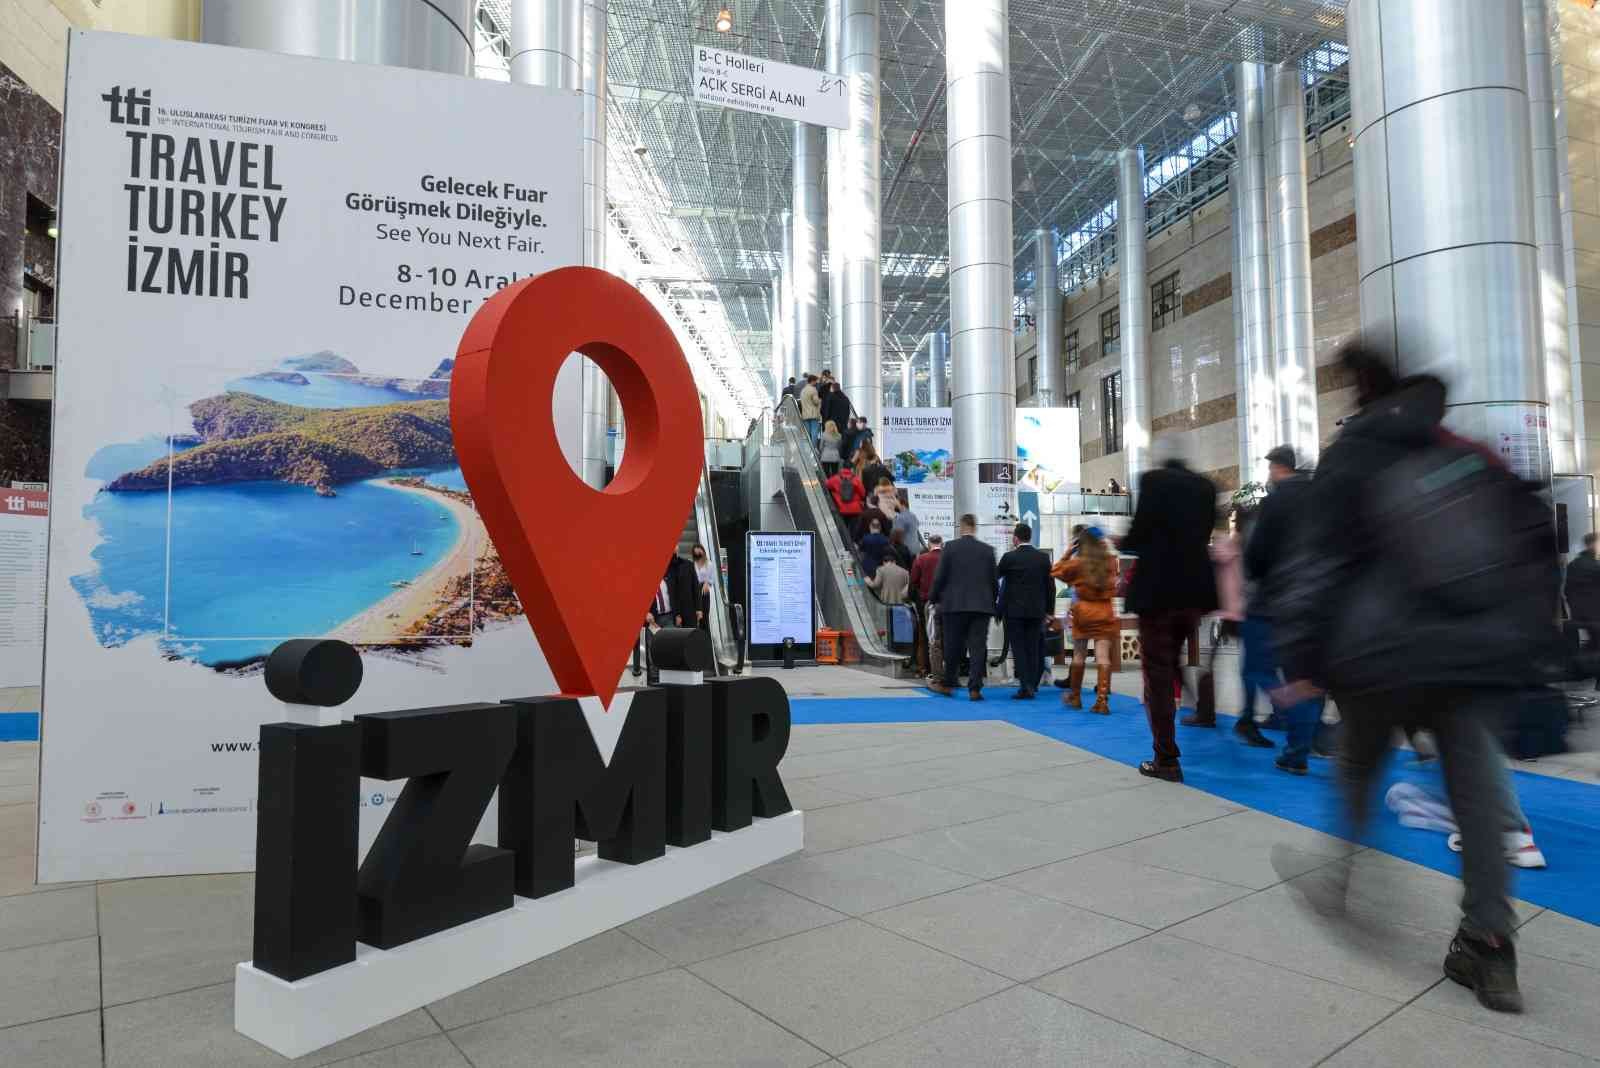 Travel Turkey İzmir 4 Aralık’ta halka açık ve ücretsiz olacak #izmir